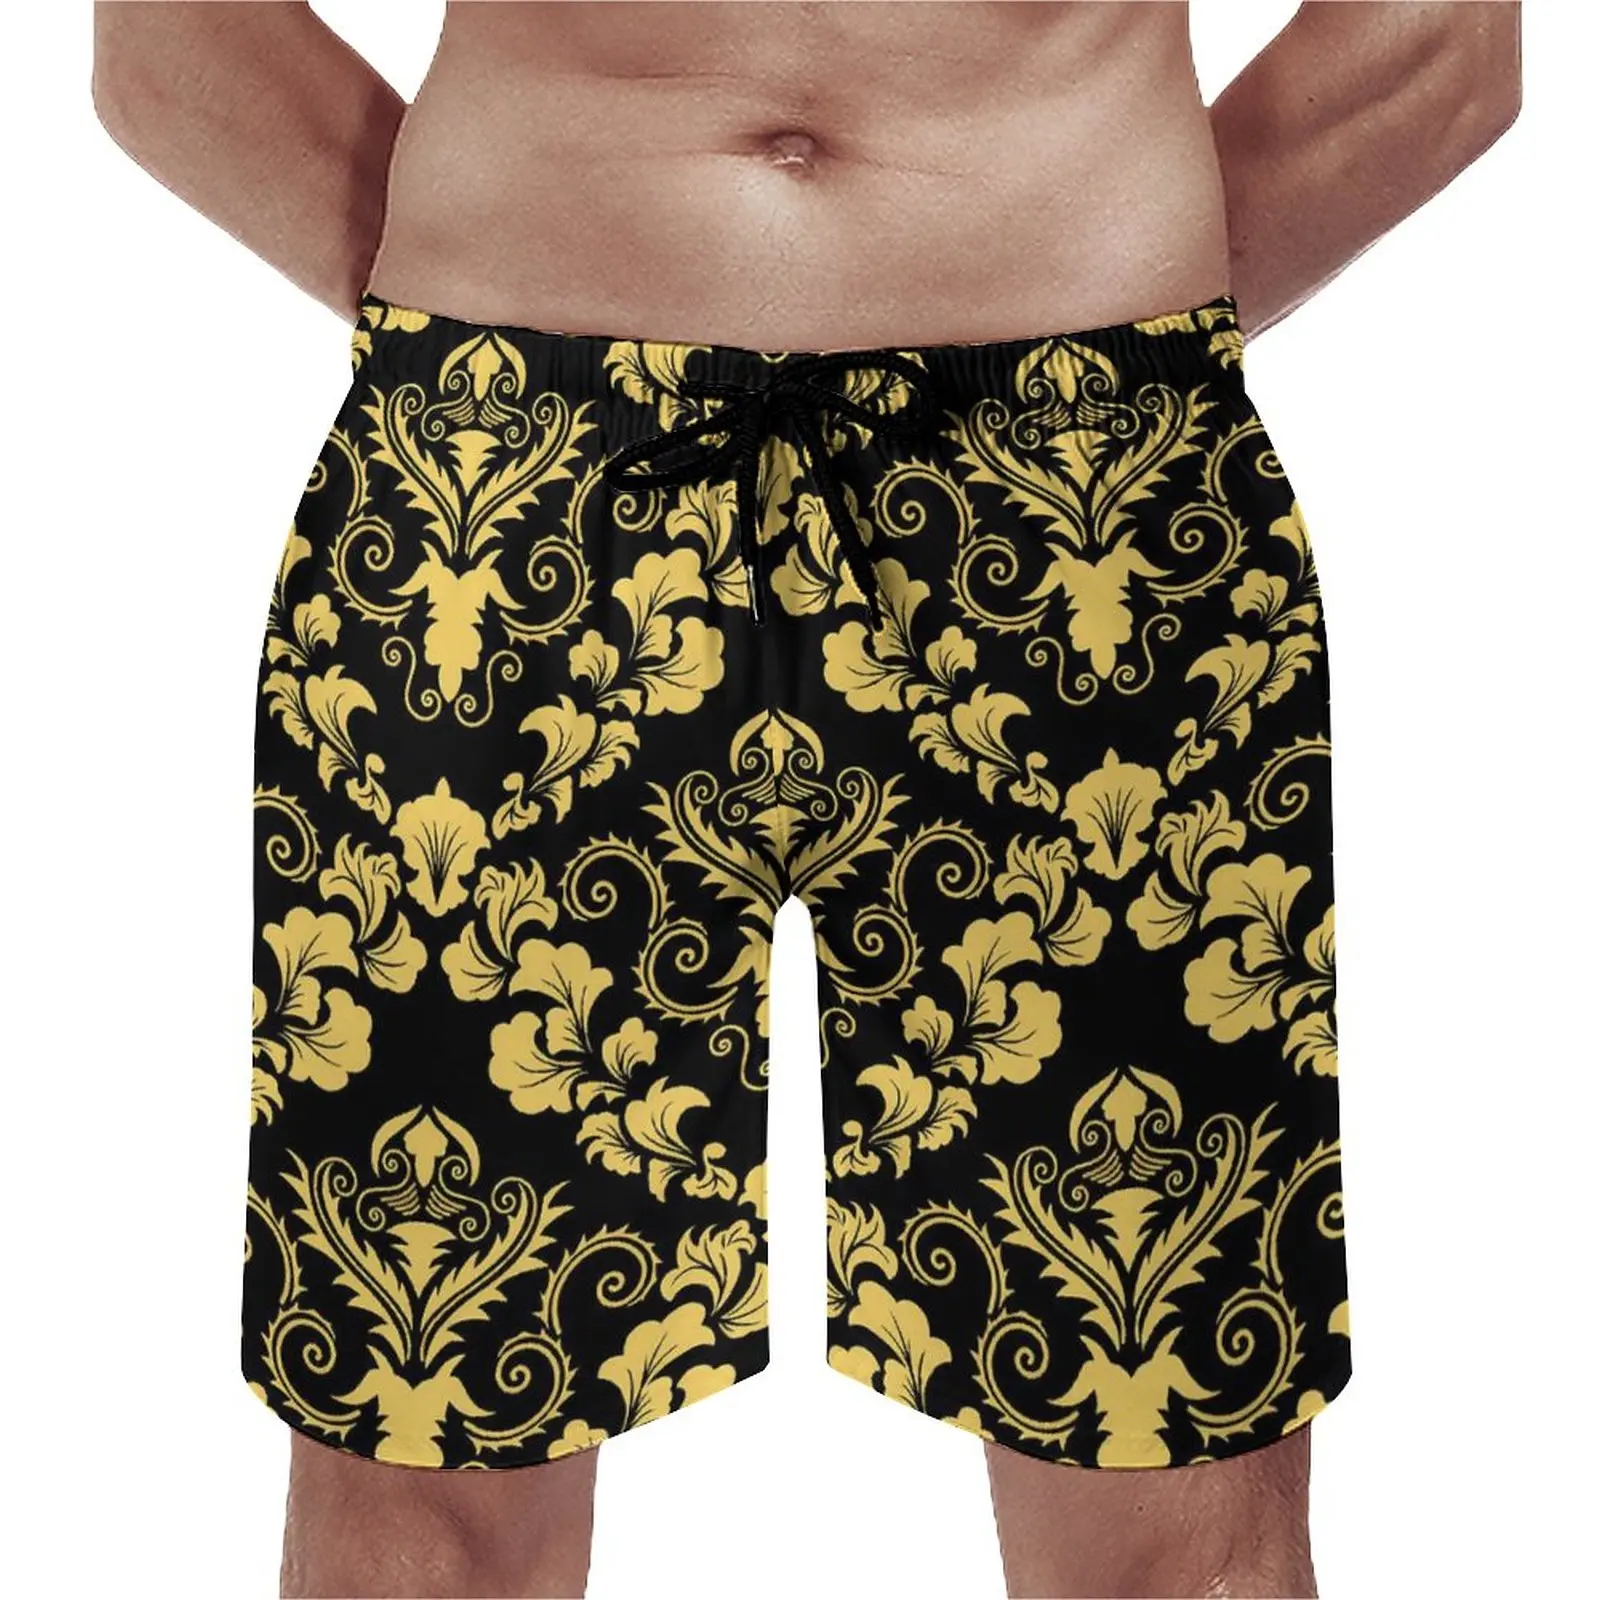 

Пляжные шорты мужские в стиле ретро, винтажные Дамасские плавки, быстросохнущая спортивная одежда, модные пляжные шорты оверсайз, желтые черные